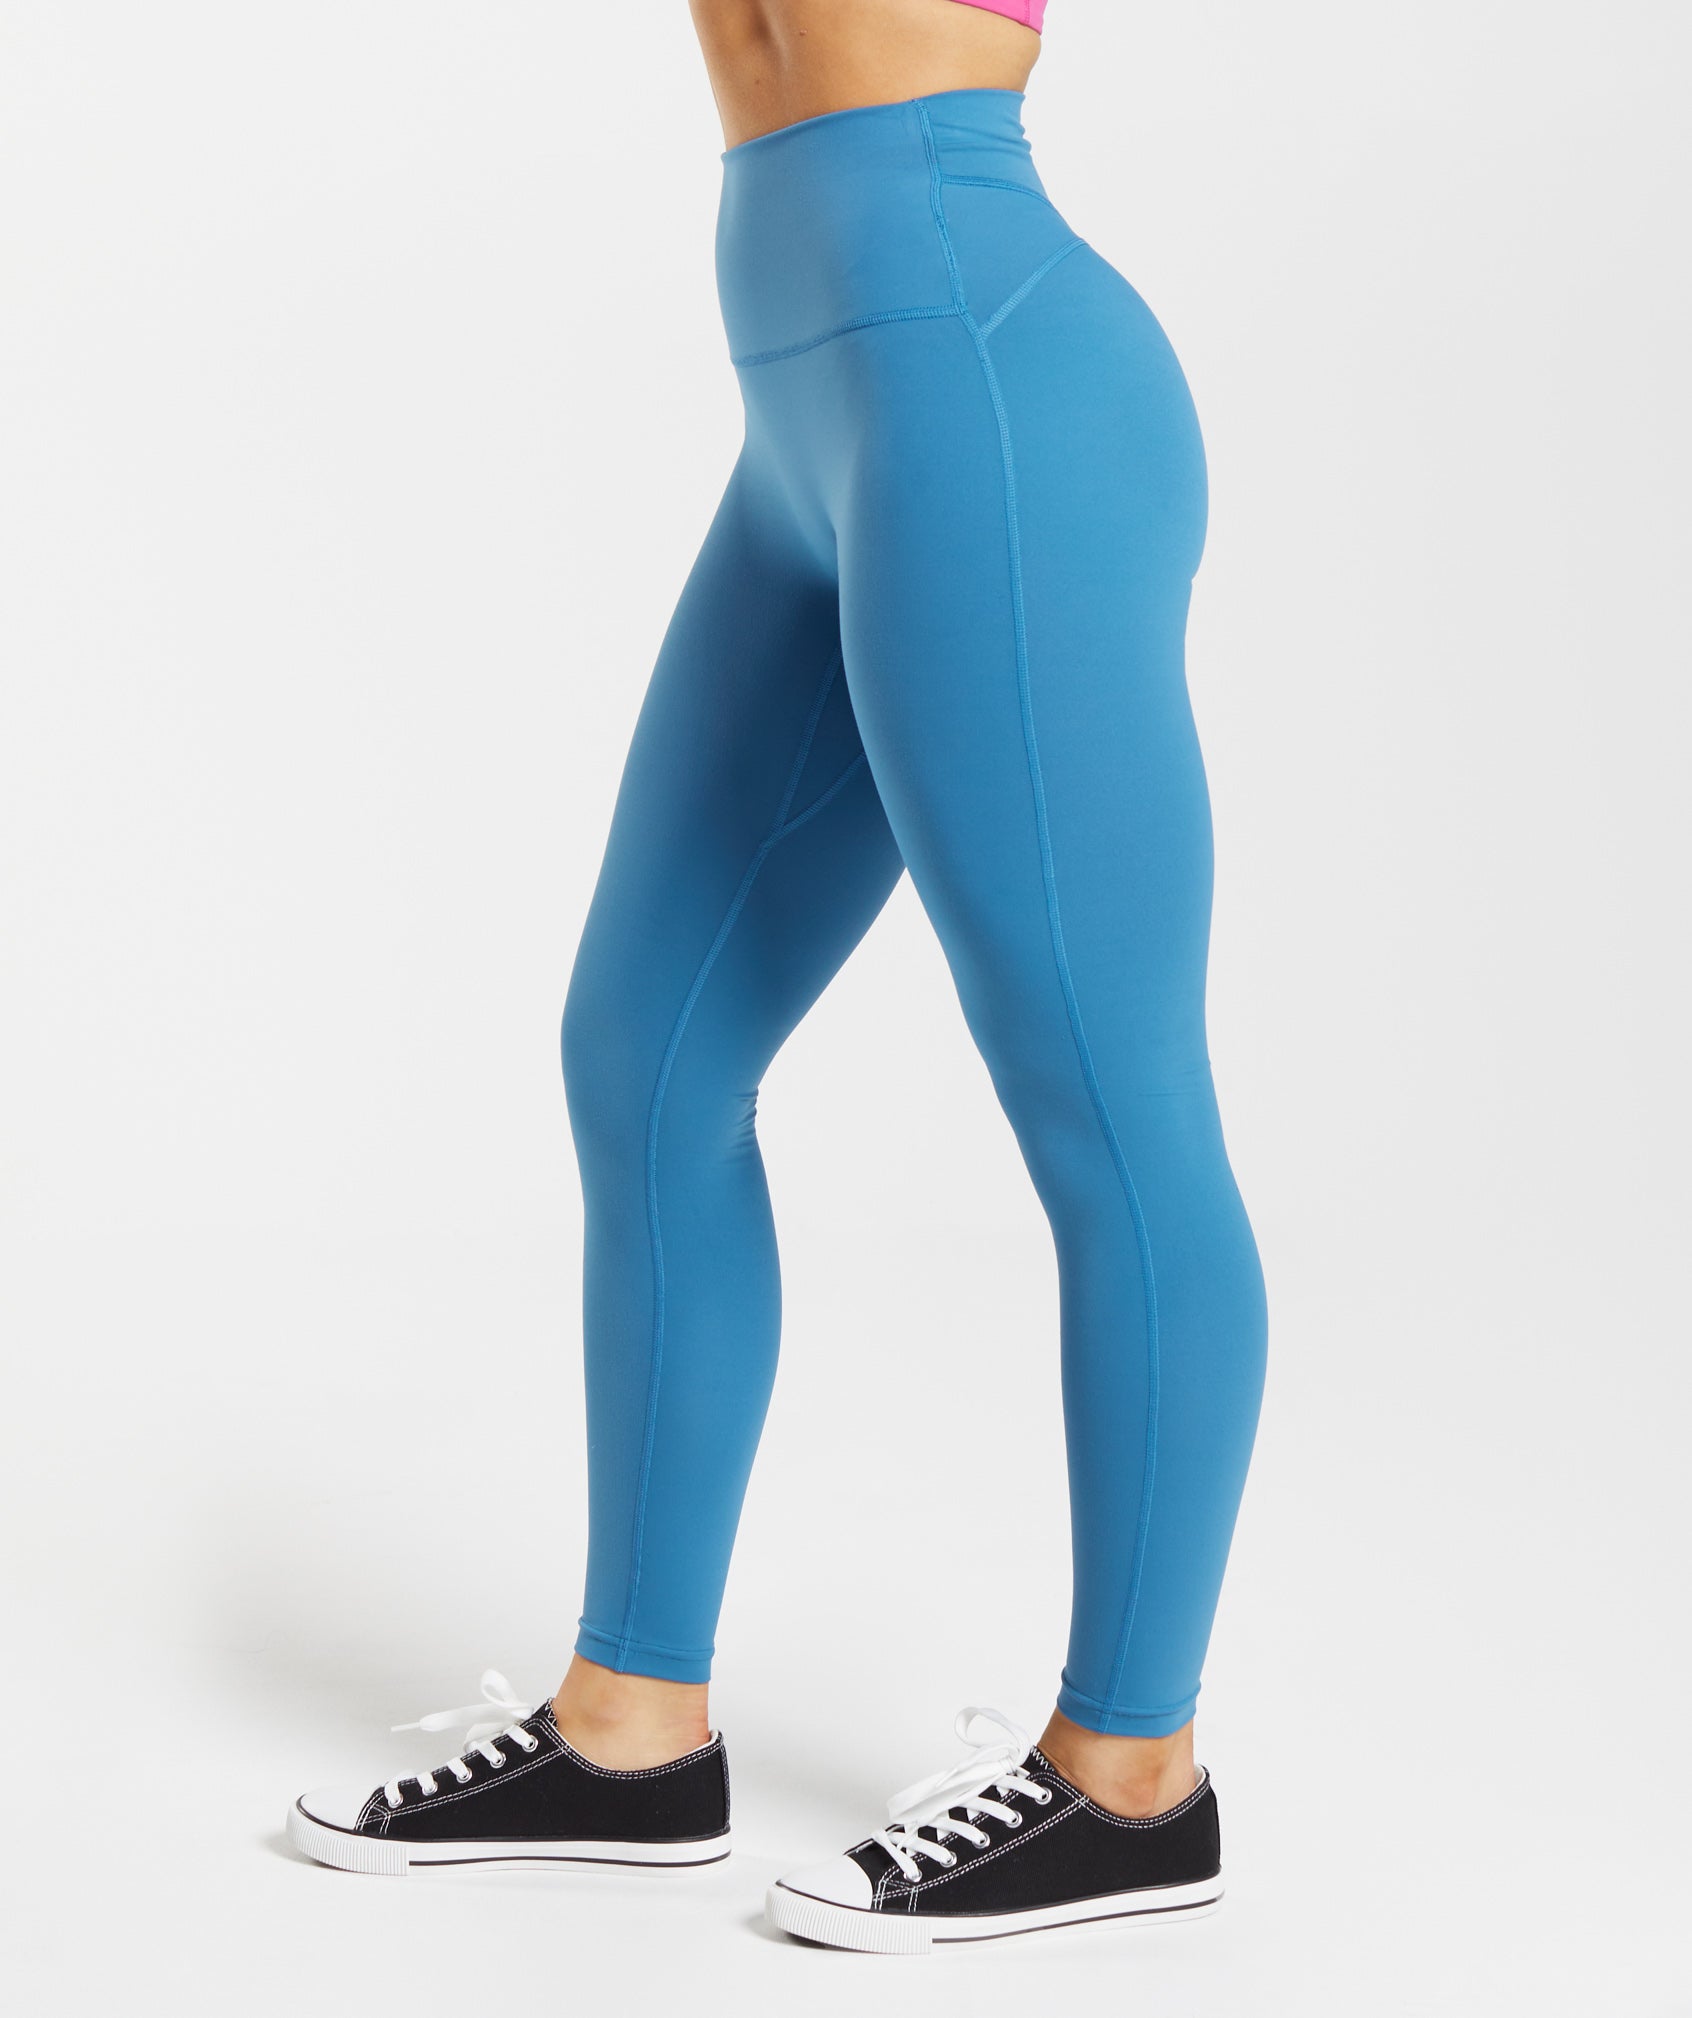 GYMSHARK Legacy Fitness XS Women Leggings Blue Stretch Activewear  Sportswear